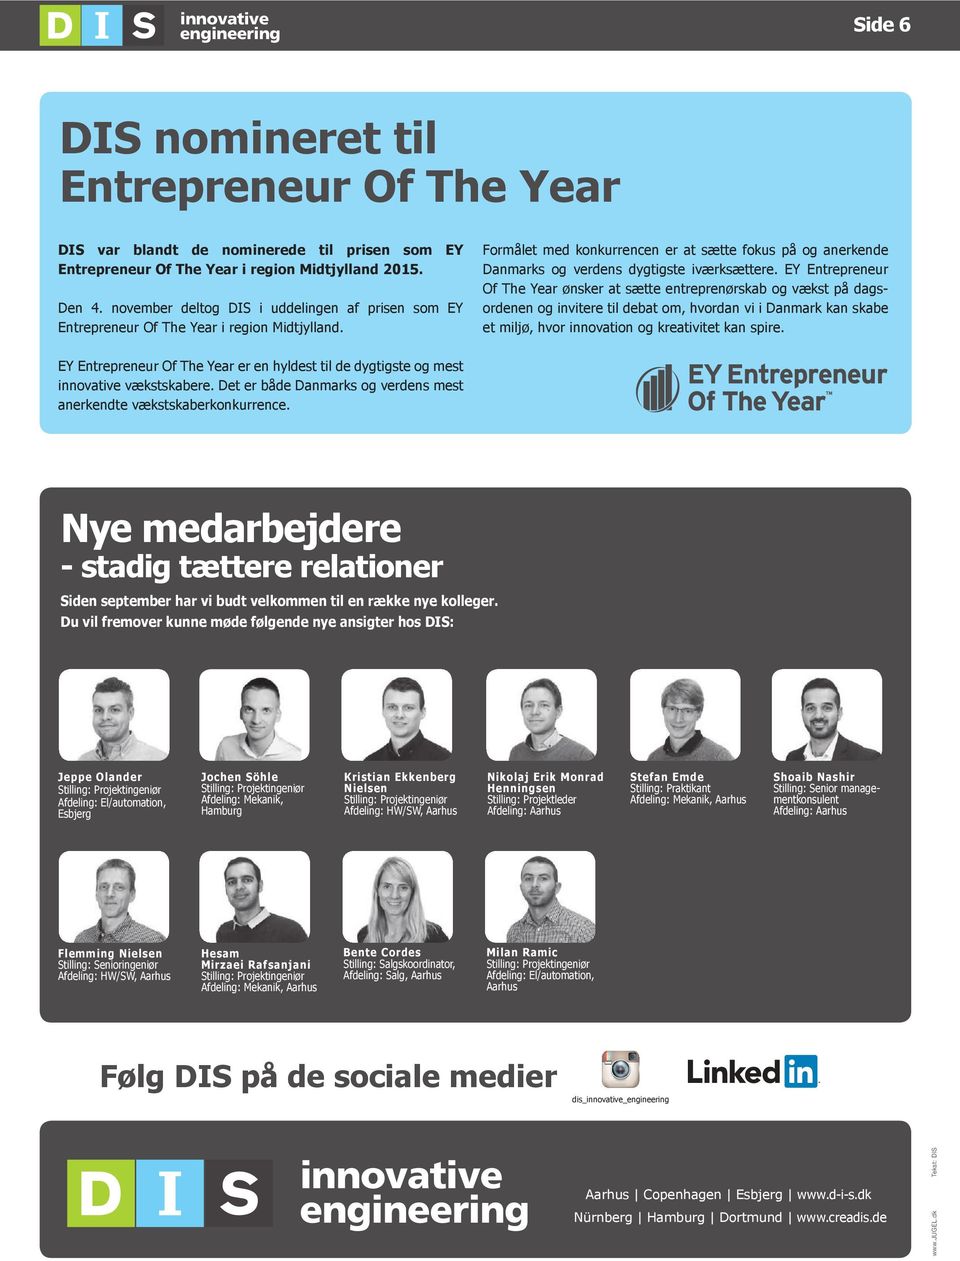 EY Entrepreneur Of The Year ønsker at sætte entreprenørskab og vækst på dagsordenen og invitere til debat om, hvordan vi i Danmark kan skabe et miljø, hvor innovation og kreativitet kan spire.